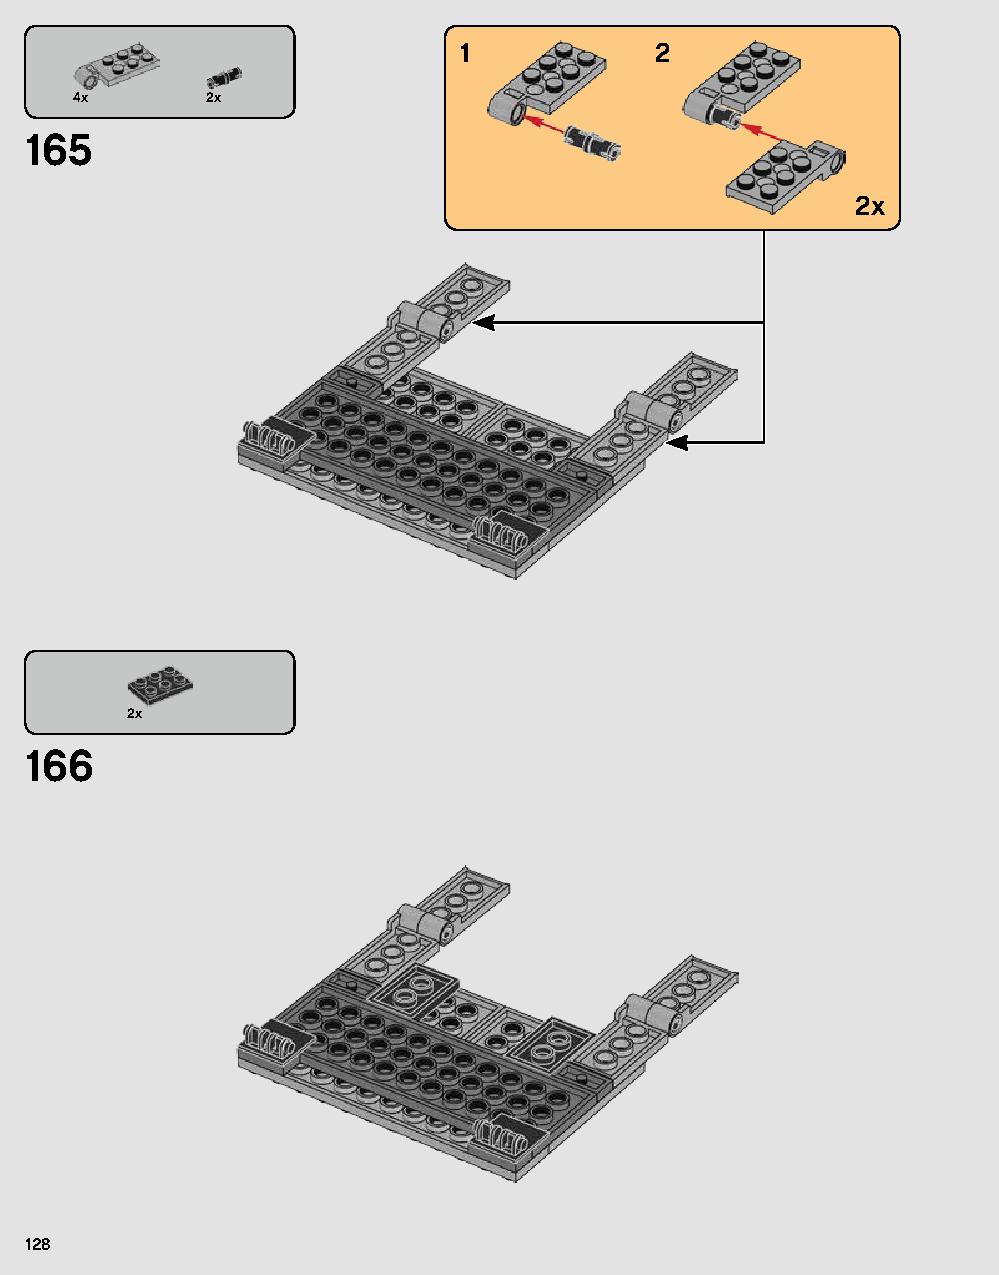 ダース・ベイダーの城 75251 レゴの商品情報 レゴの説明書・組立方法 128 page